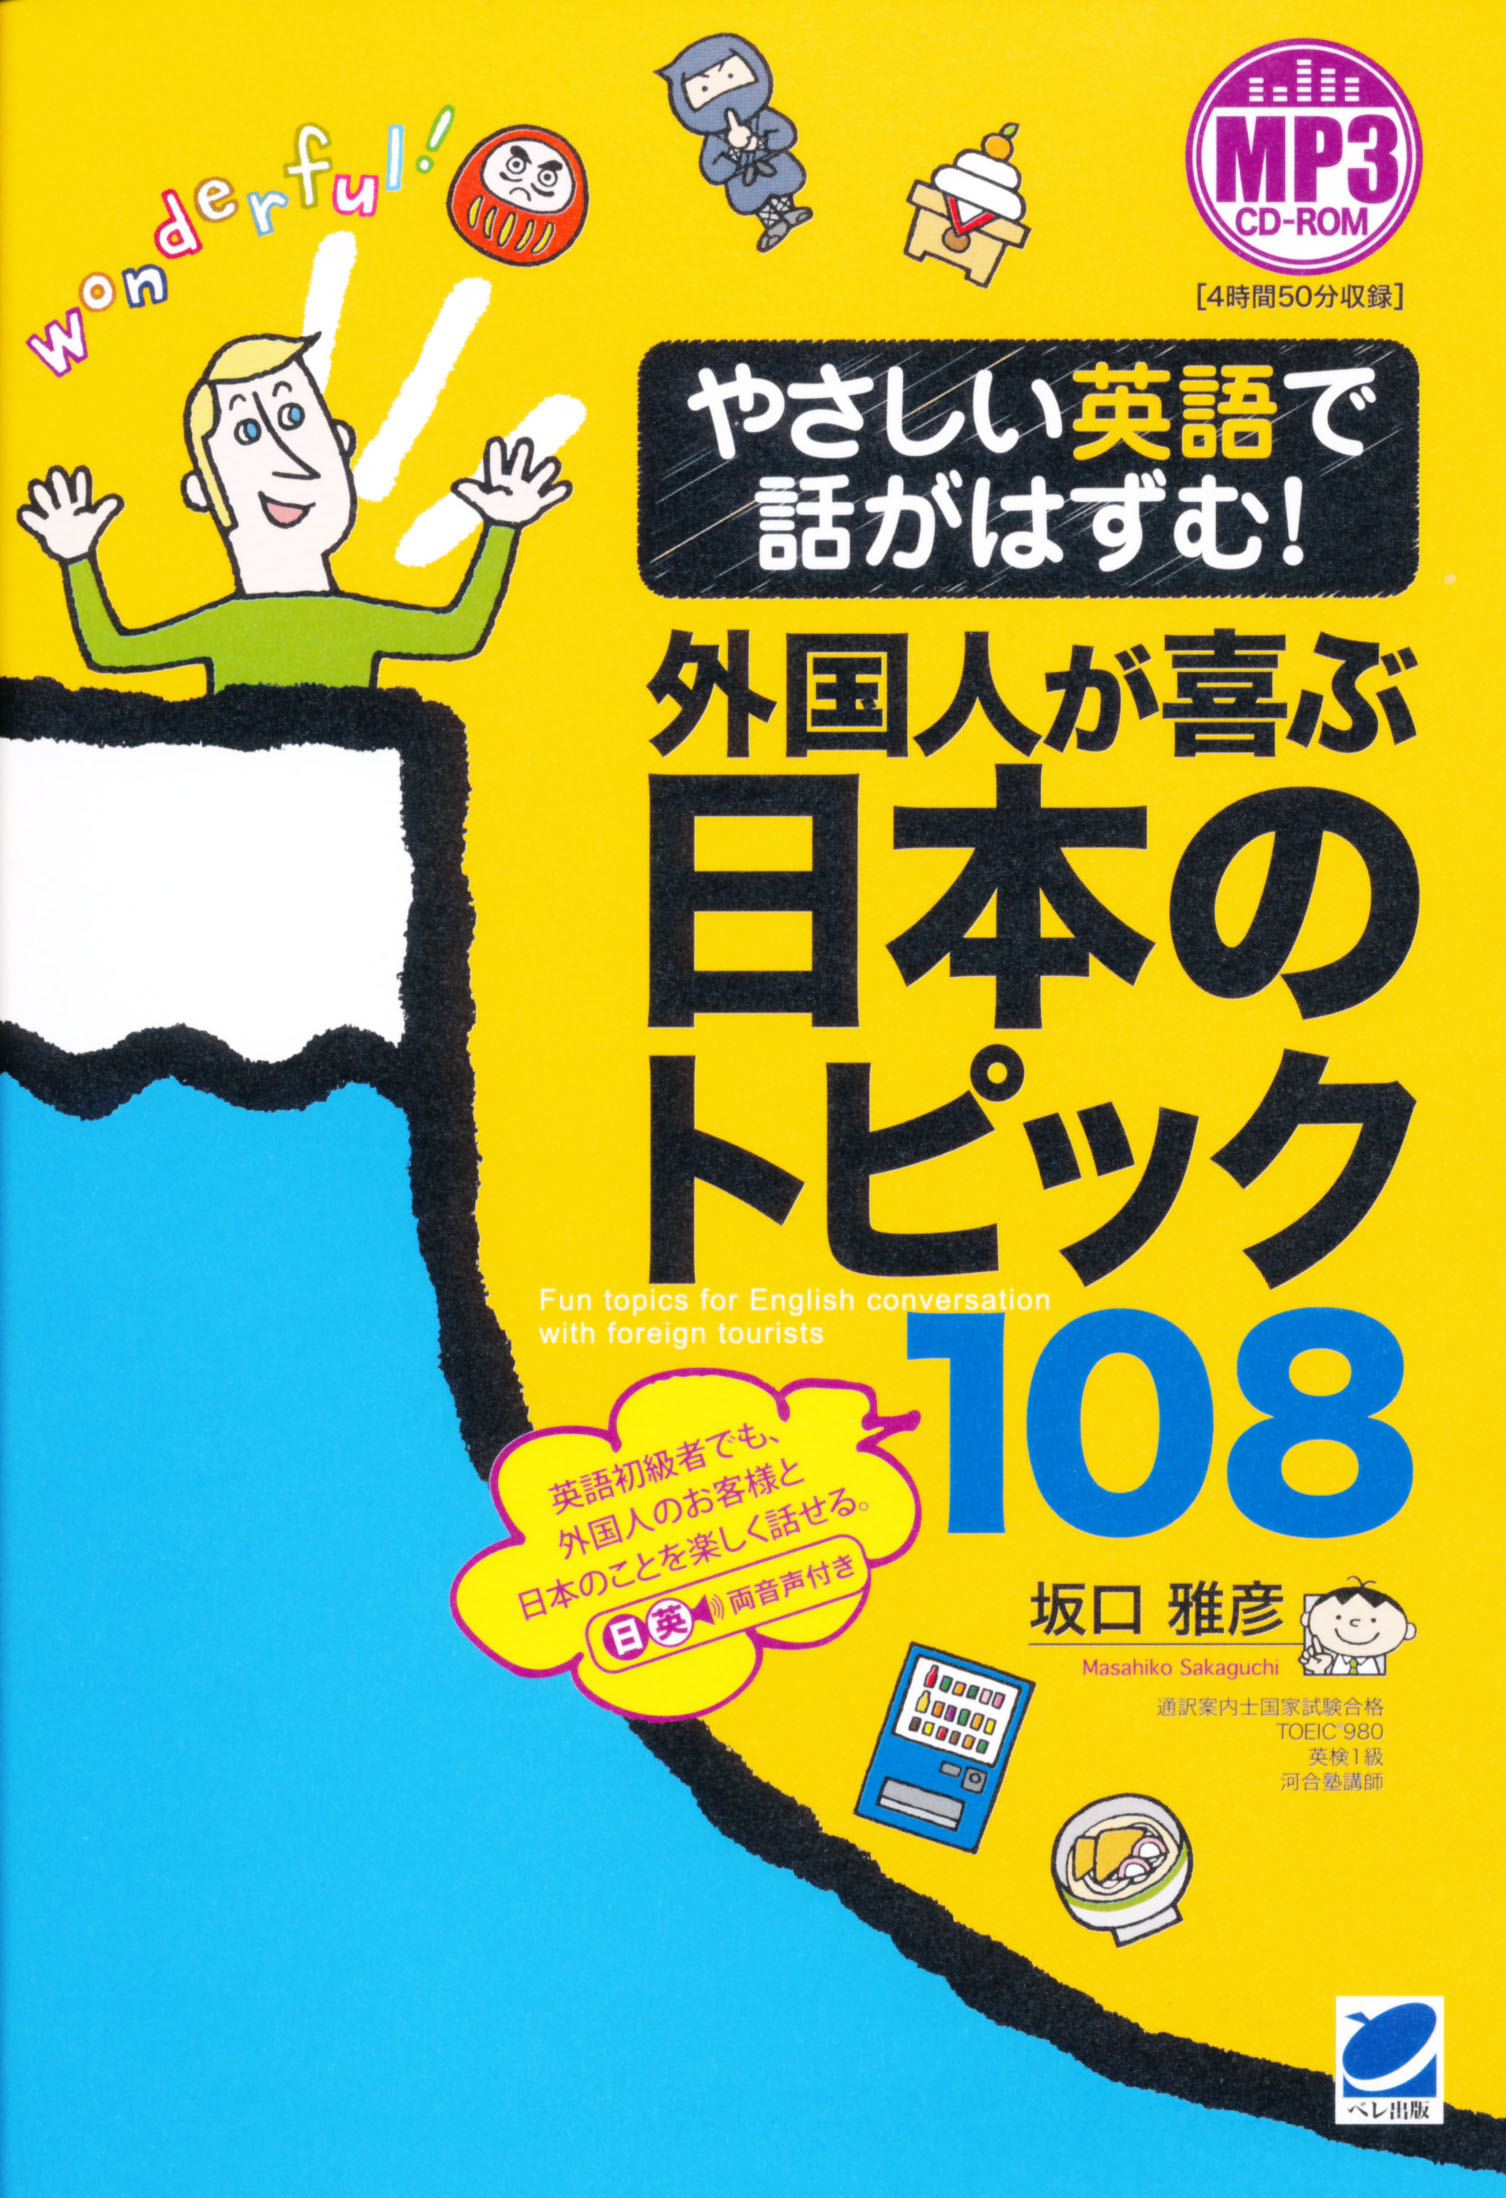 やさしい英語で話がはずむ！ 外国人が喜ぶ日本のトピック108 MP3 CD 